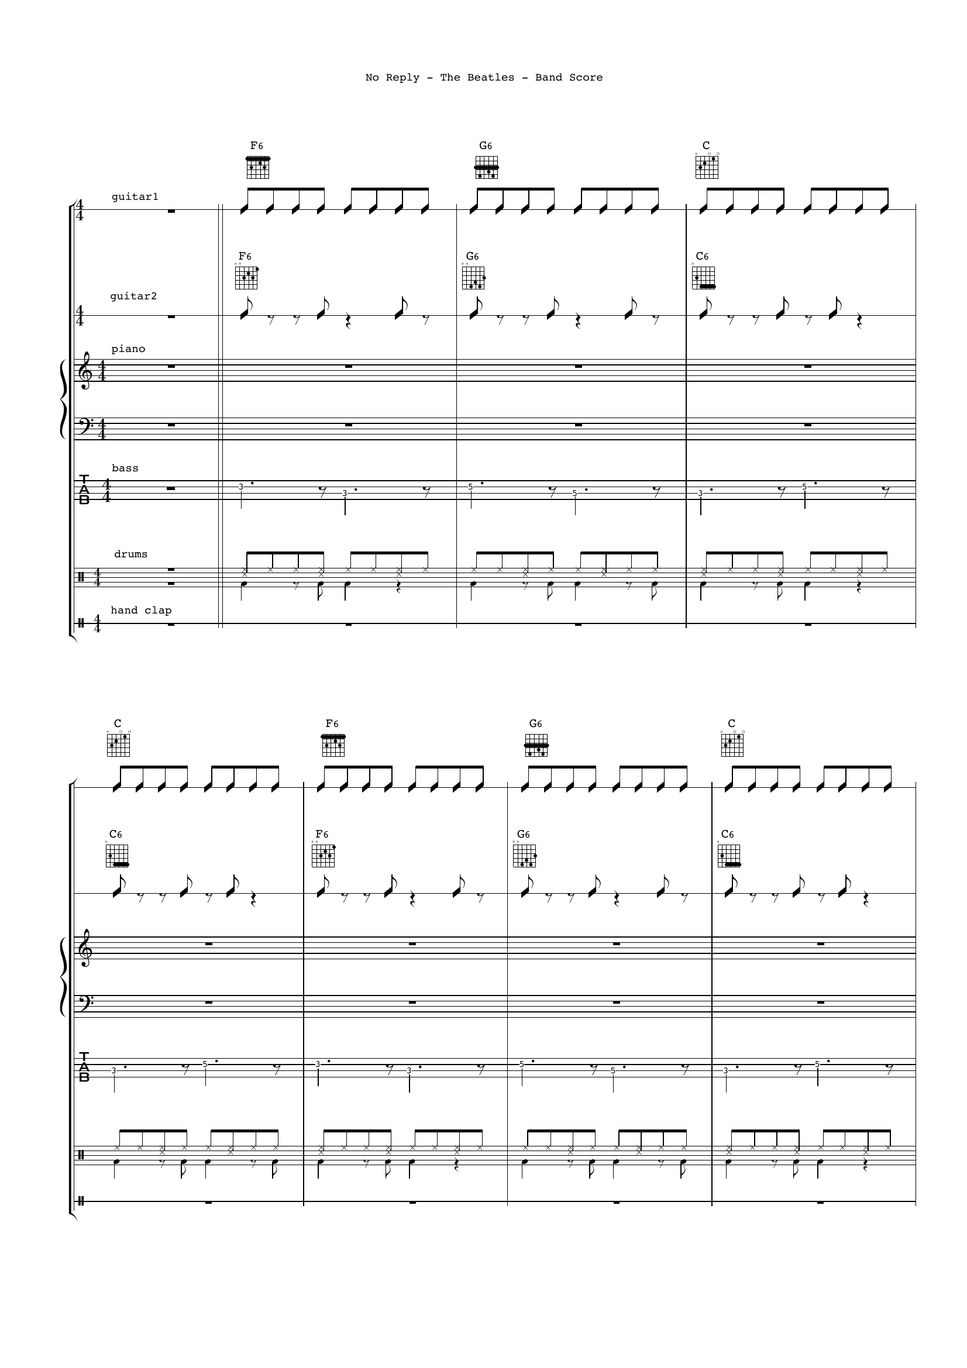 The Beatles - No Reply (Band Score) by Ryohei Kanayama